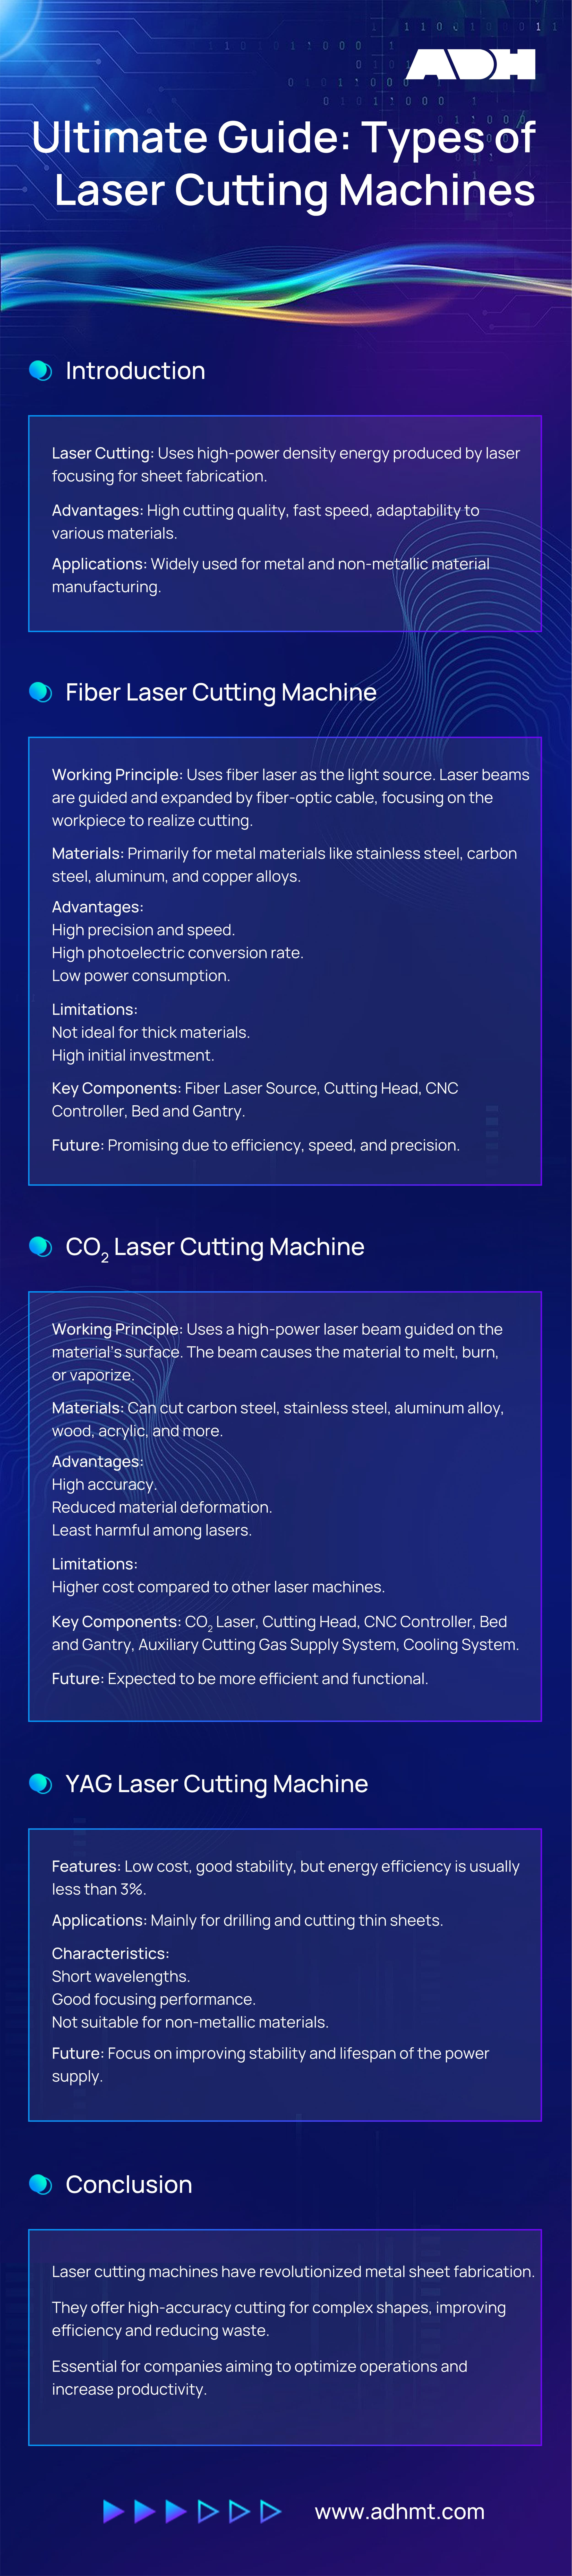 infographie sur les types de machines de découpe au laser